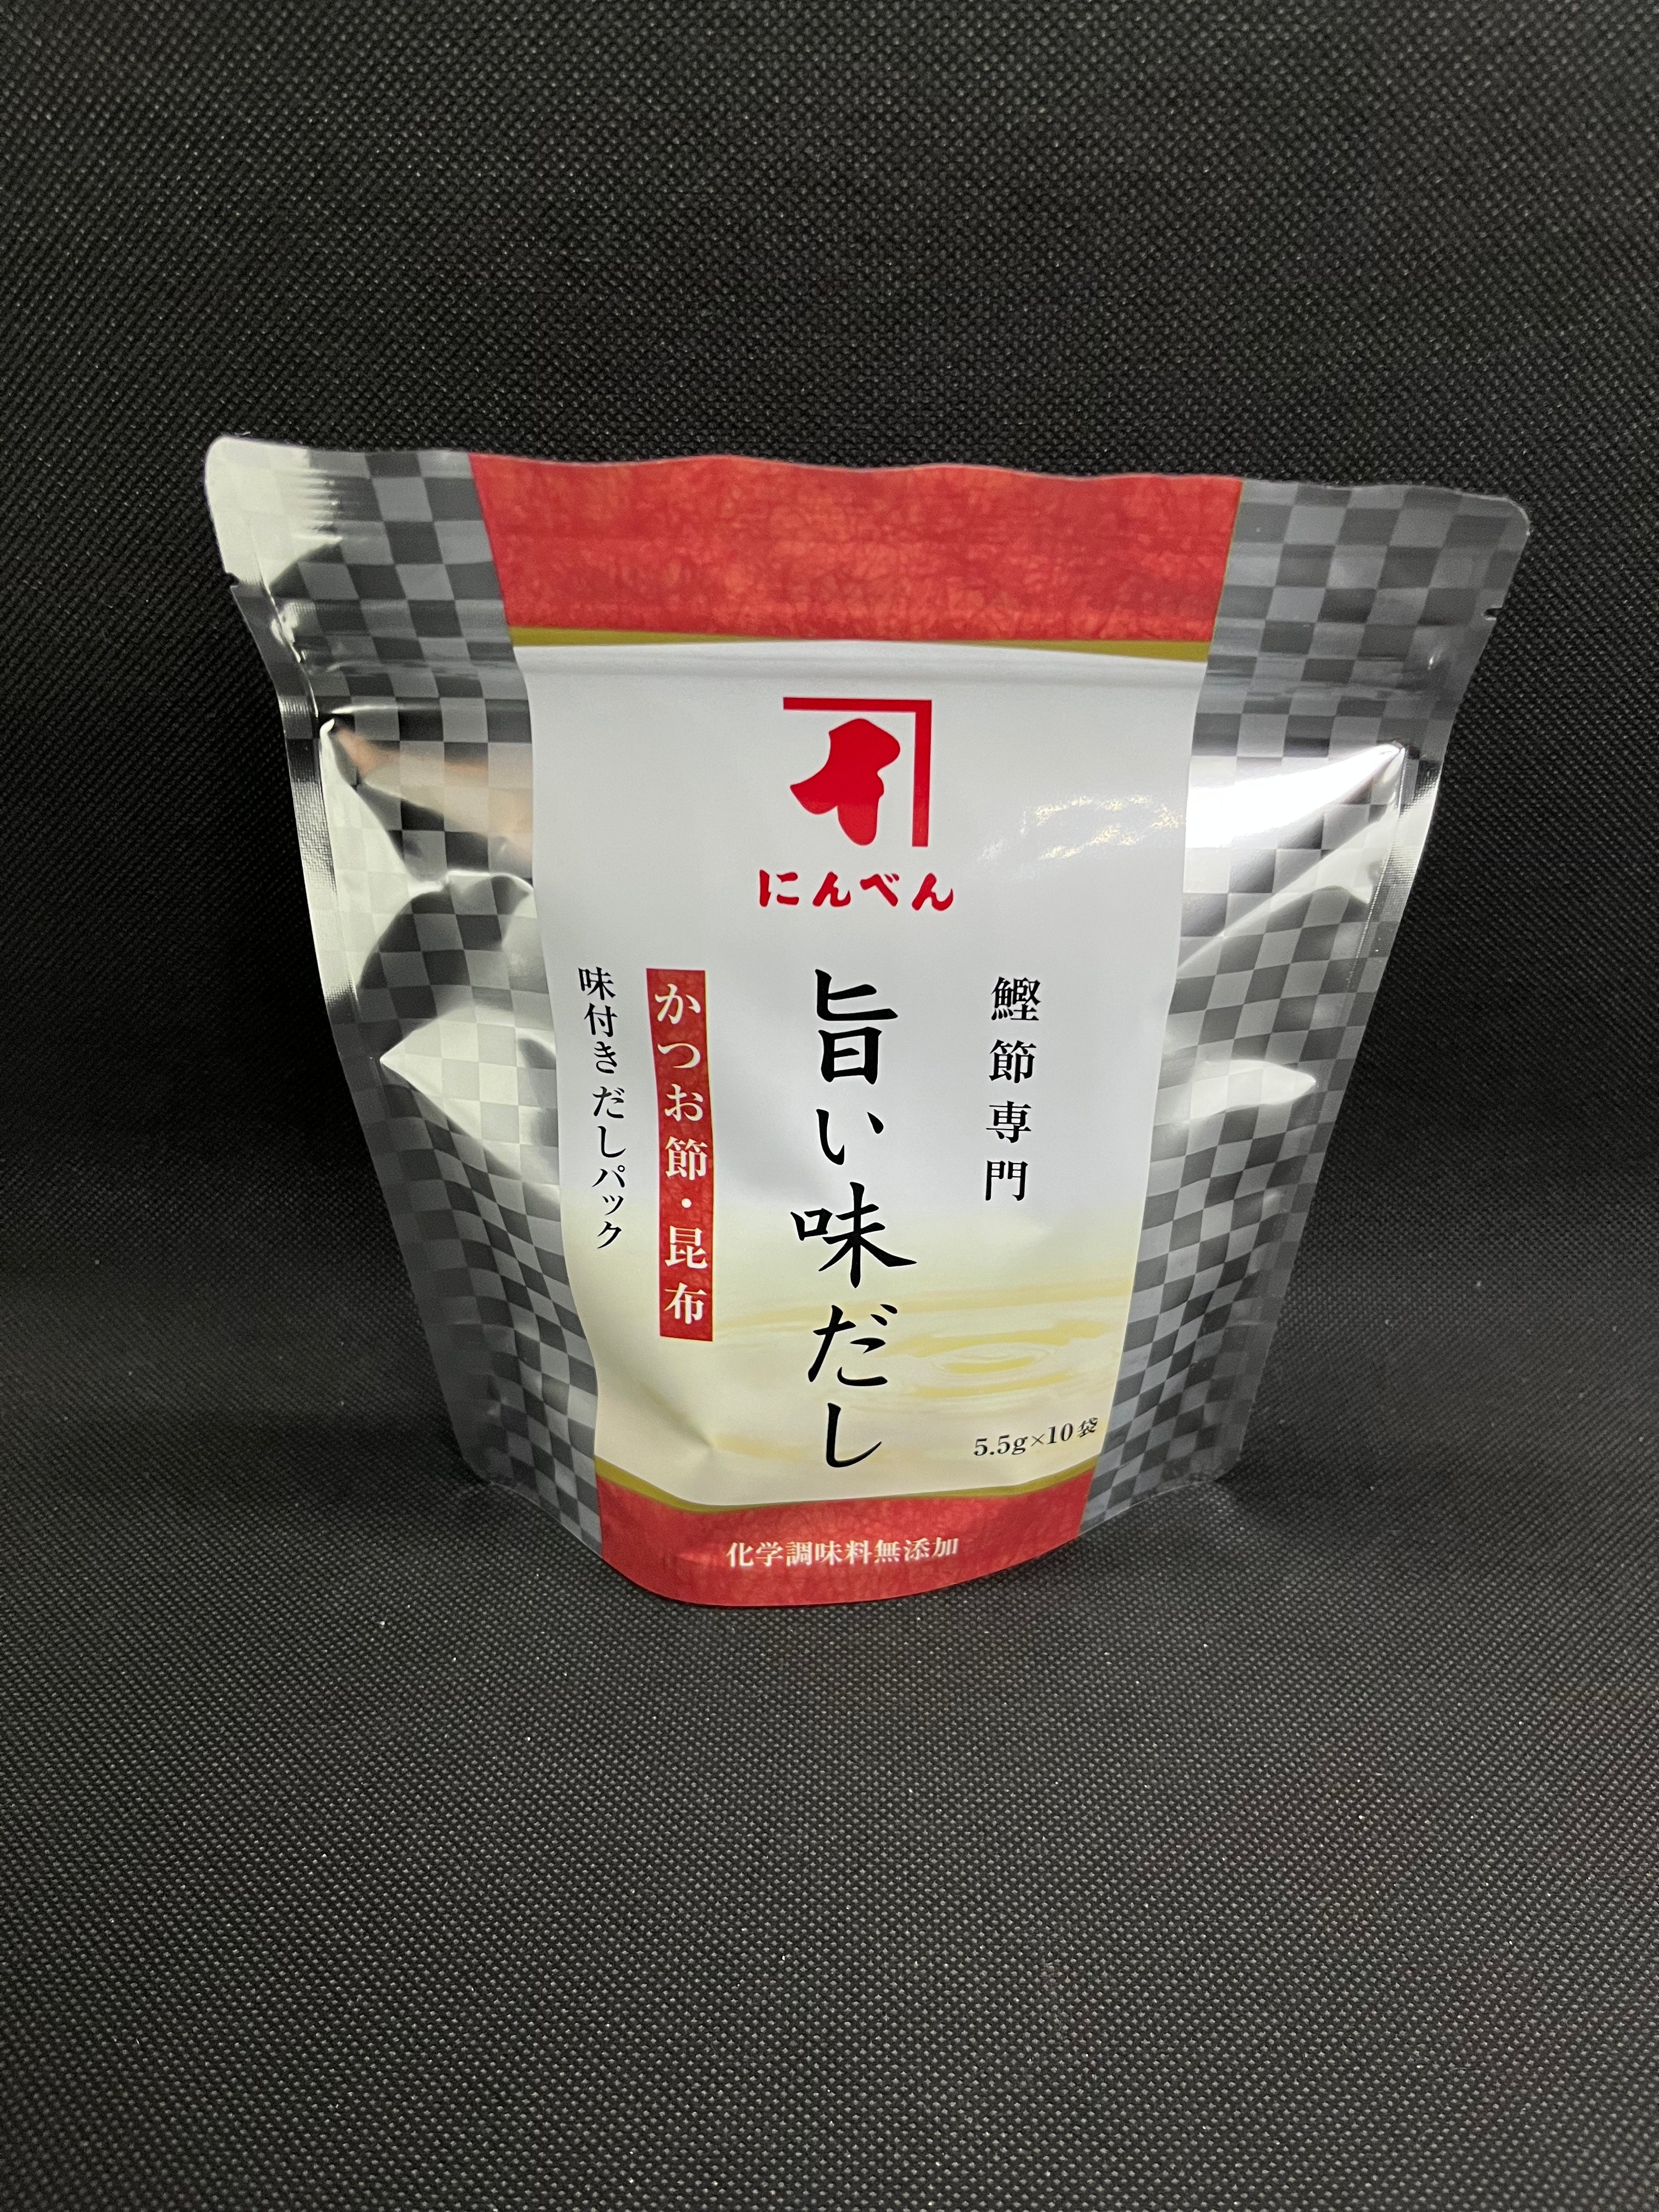 にんべん 旨い味だし かつお節・昆布 (5.5g x 10袋)